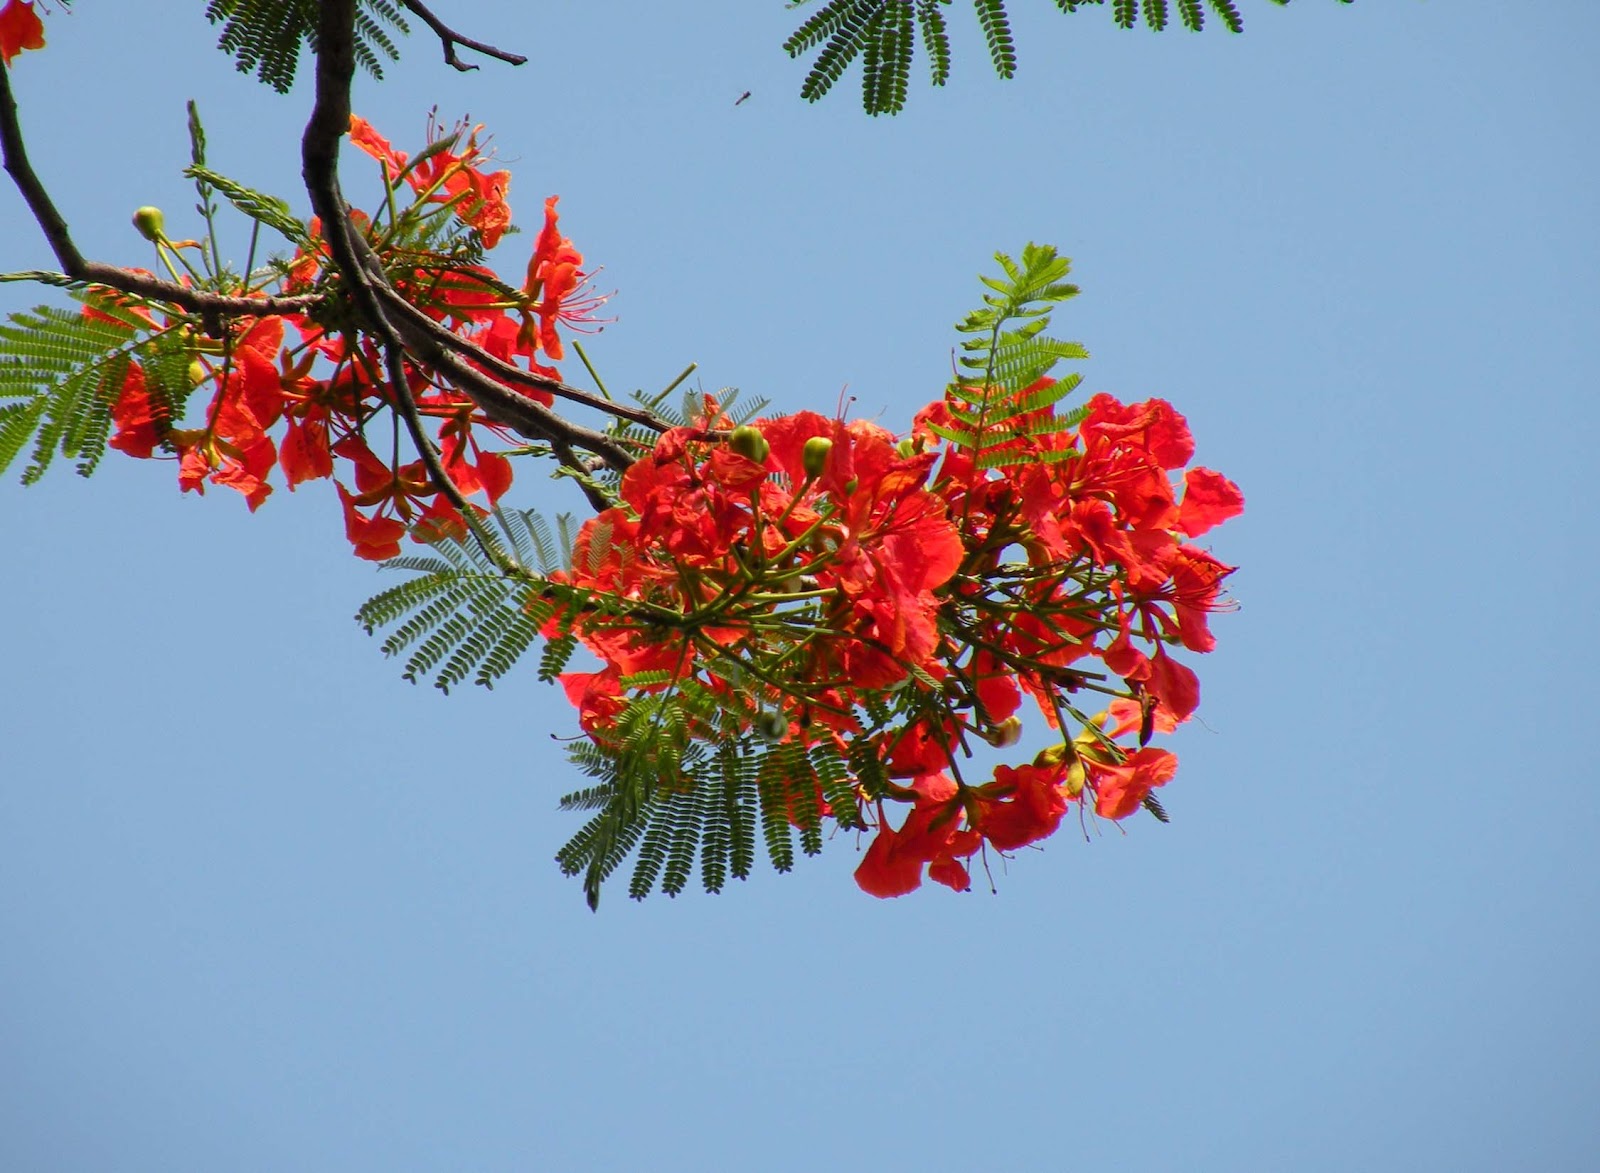 Một khoảnh khắc rực rỡ sắc đỏ của hoa phượng chắc chắn sẽ làm bạn lóa mắt. Hãy cùng ngắm nhìn vẻ đẹp tinh khôi, nồng nàn của loài hoa này trong ảnh hoa phượng đẹp nhất.